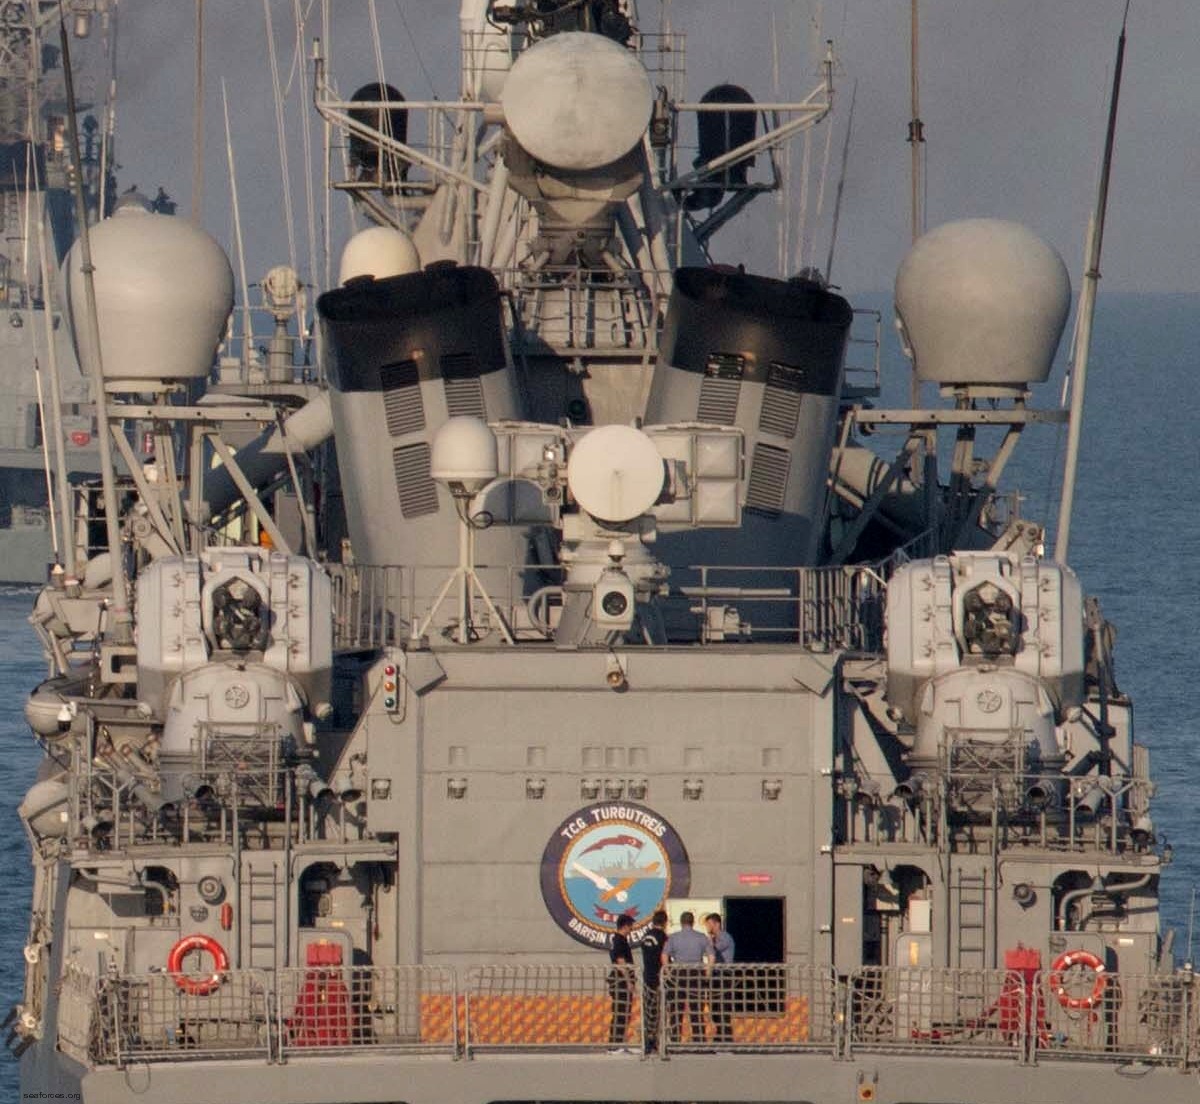 yavuz class meko-200tn frigate turkish navy türk deniz kuvvetleri 02a sea zenith ciws oerlikon rim-7 sea sparrow sam missile